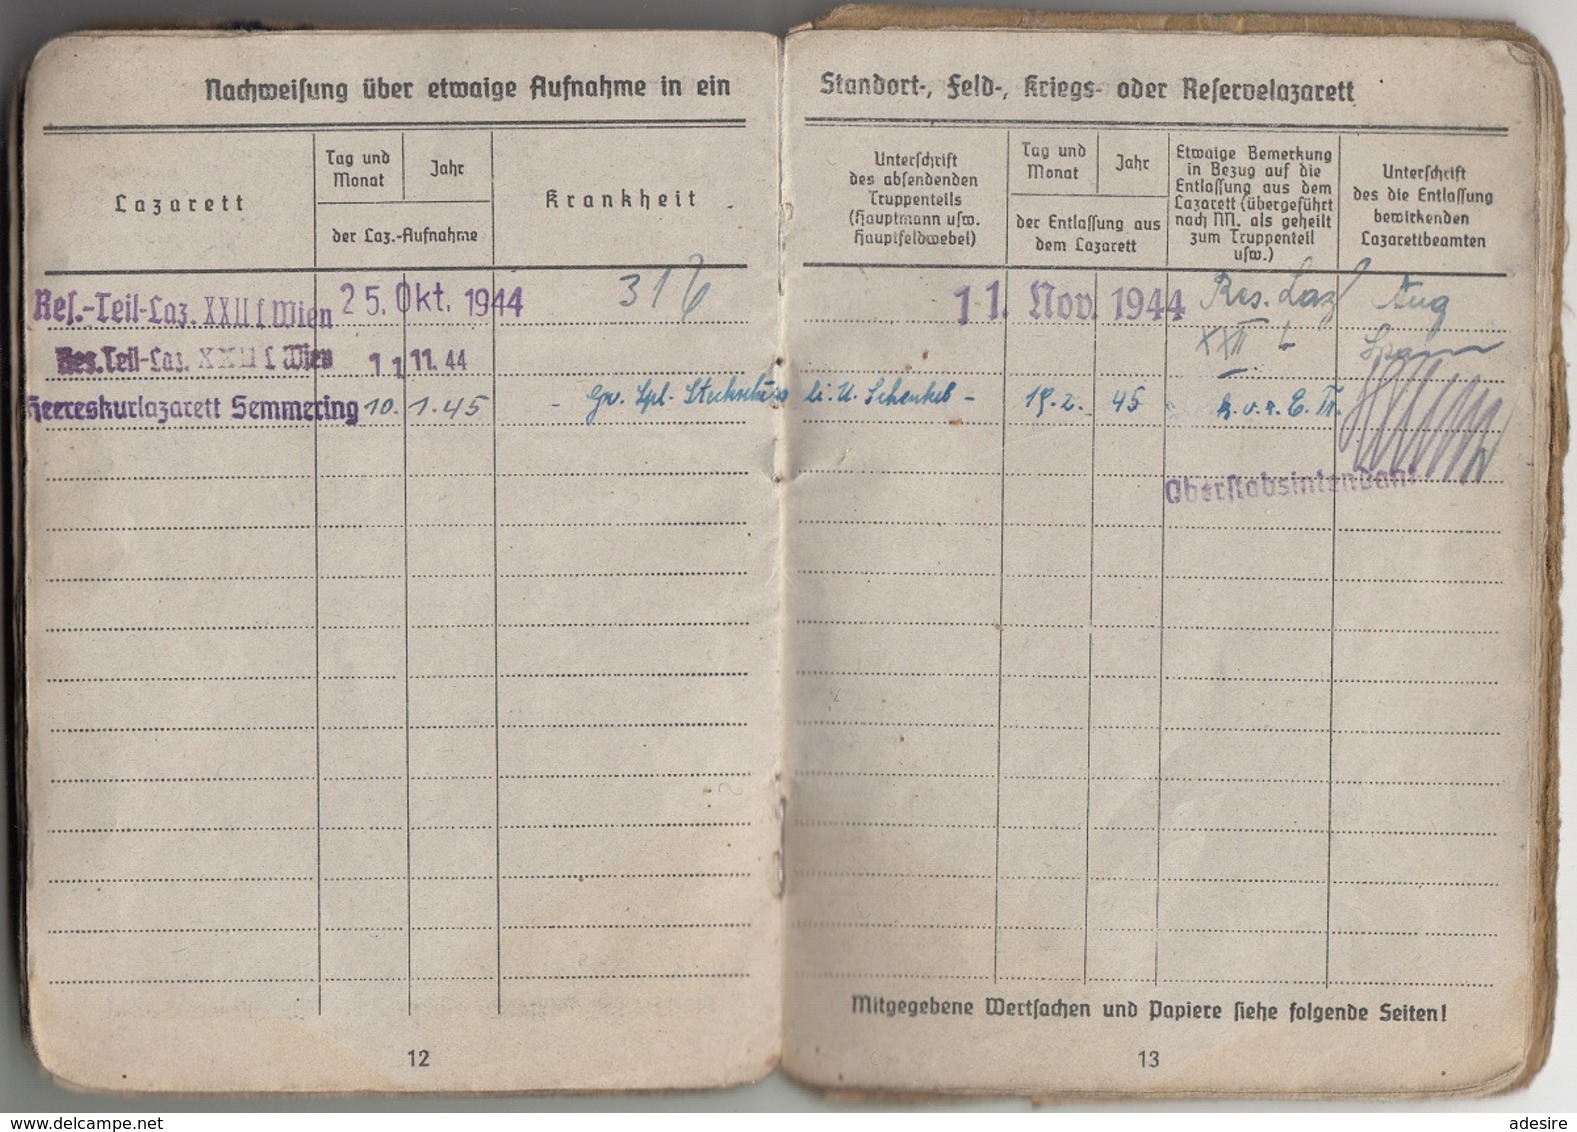 RRR! SOLDBUCH zgl. PERSONALAUSWEIS eines OBERSCHÜTZTEN 1942 GEFREITER ab 1944 des 7 Inf.Ersatz Bat. II, 24 Seiten mit ..